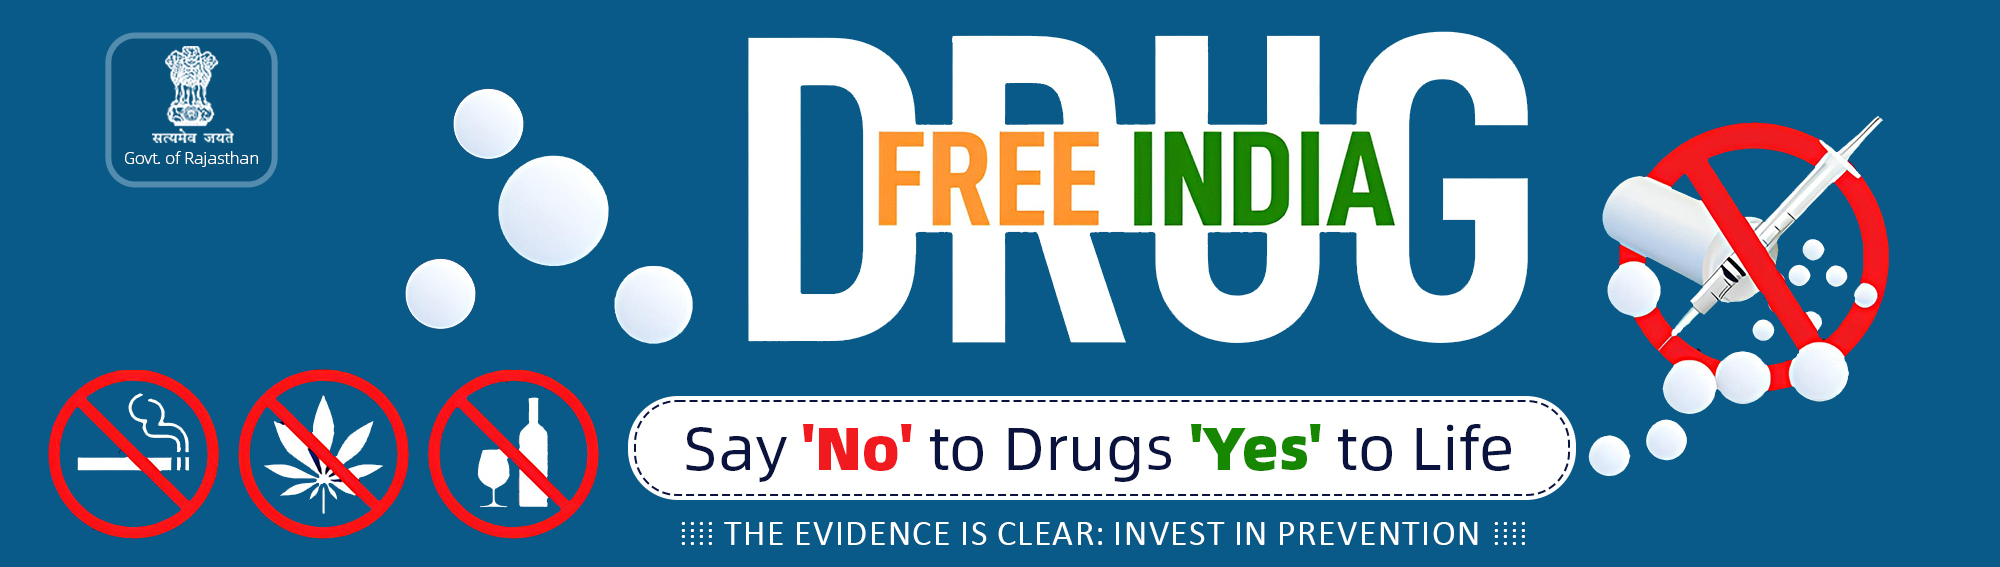 DRUG FREE INDIA